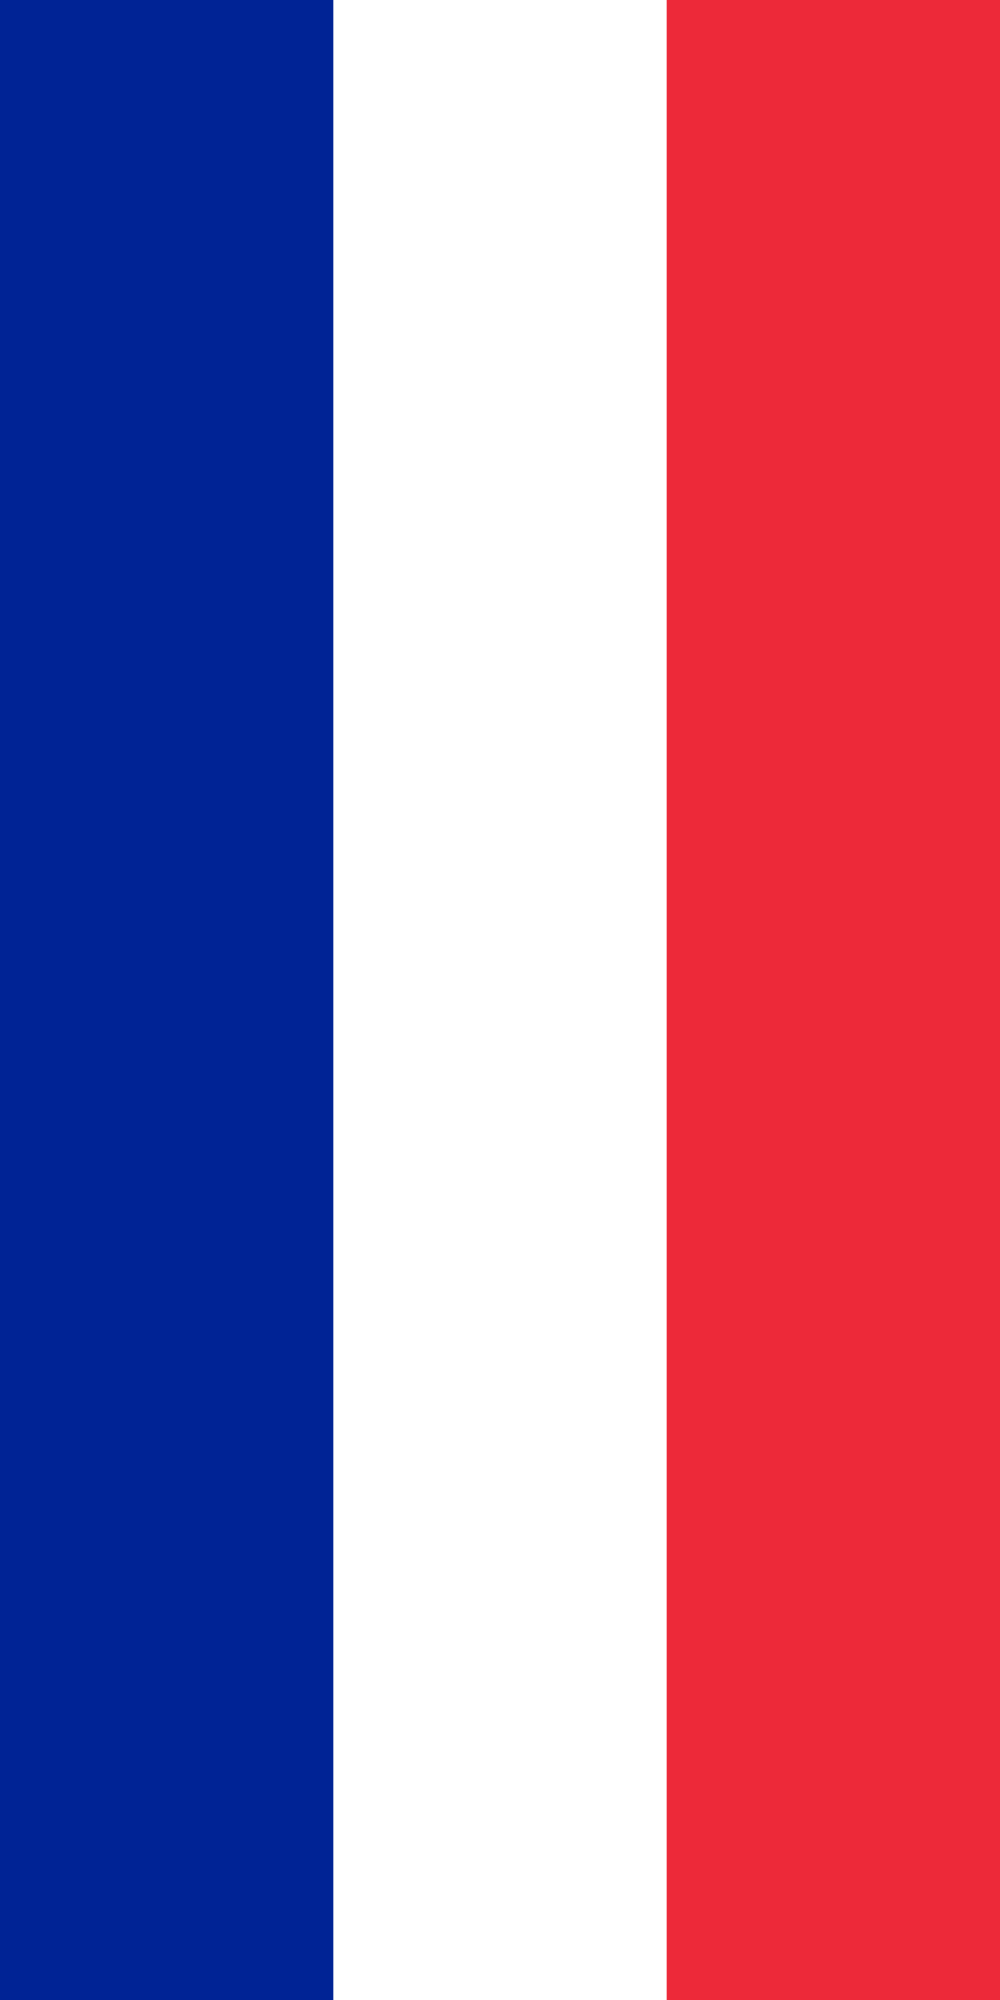 Download File:Flag of France (vertical).svg - Wikipedia